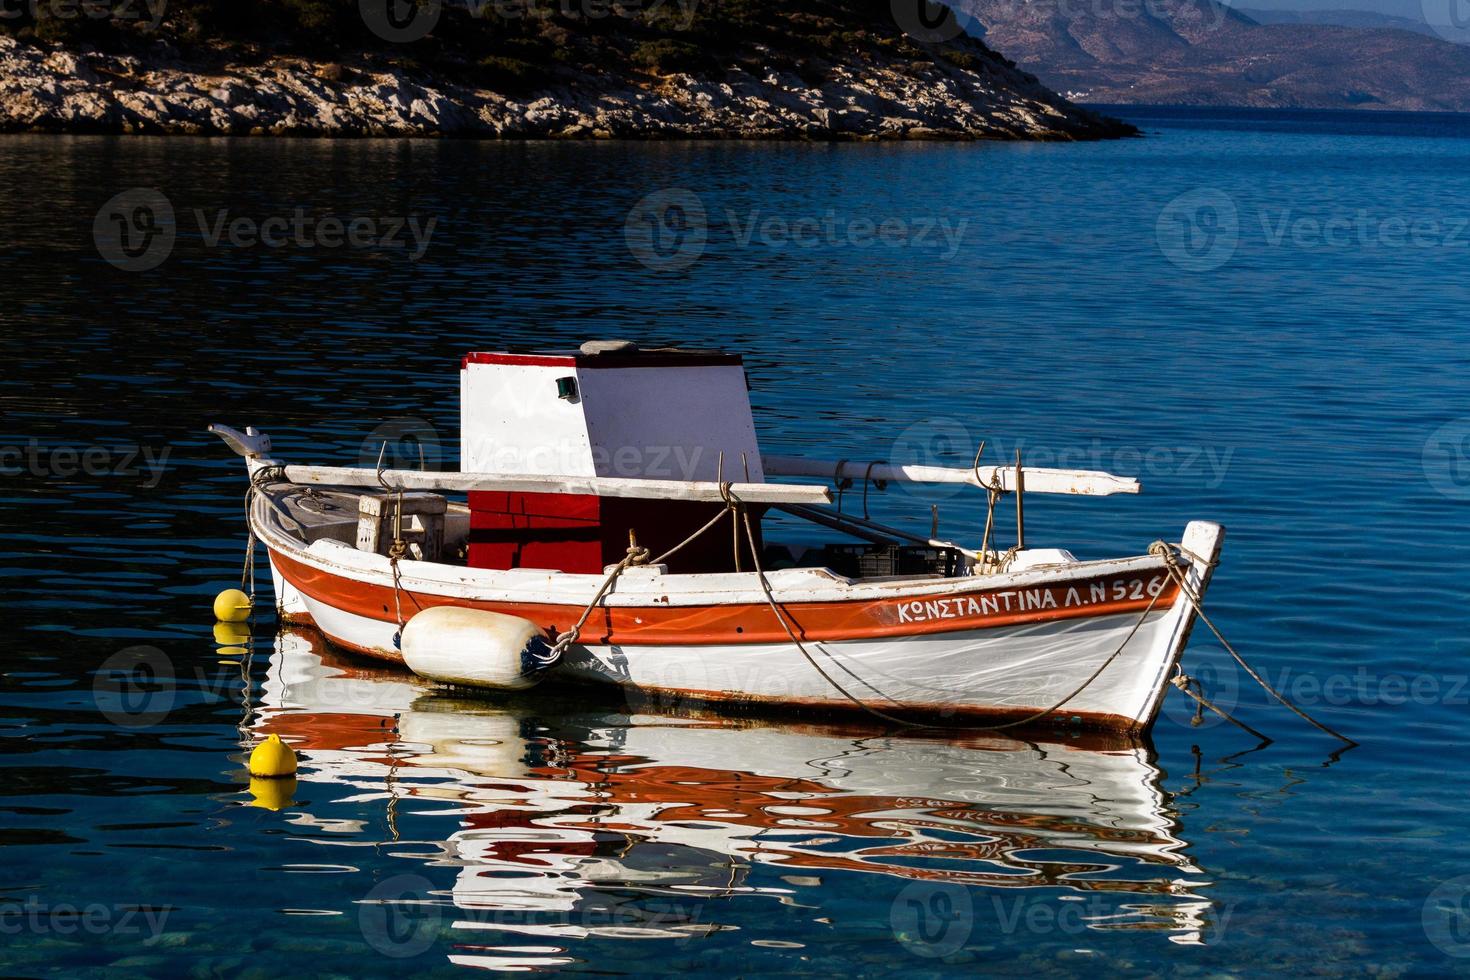 tradizionale pescatore Barche di Grecia foto